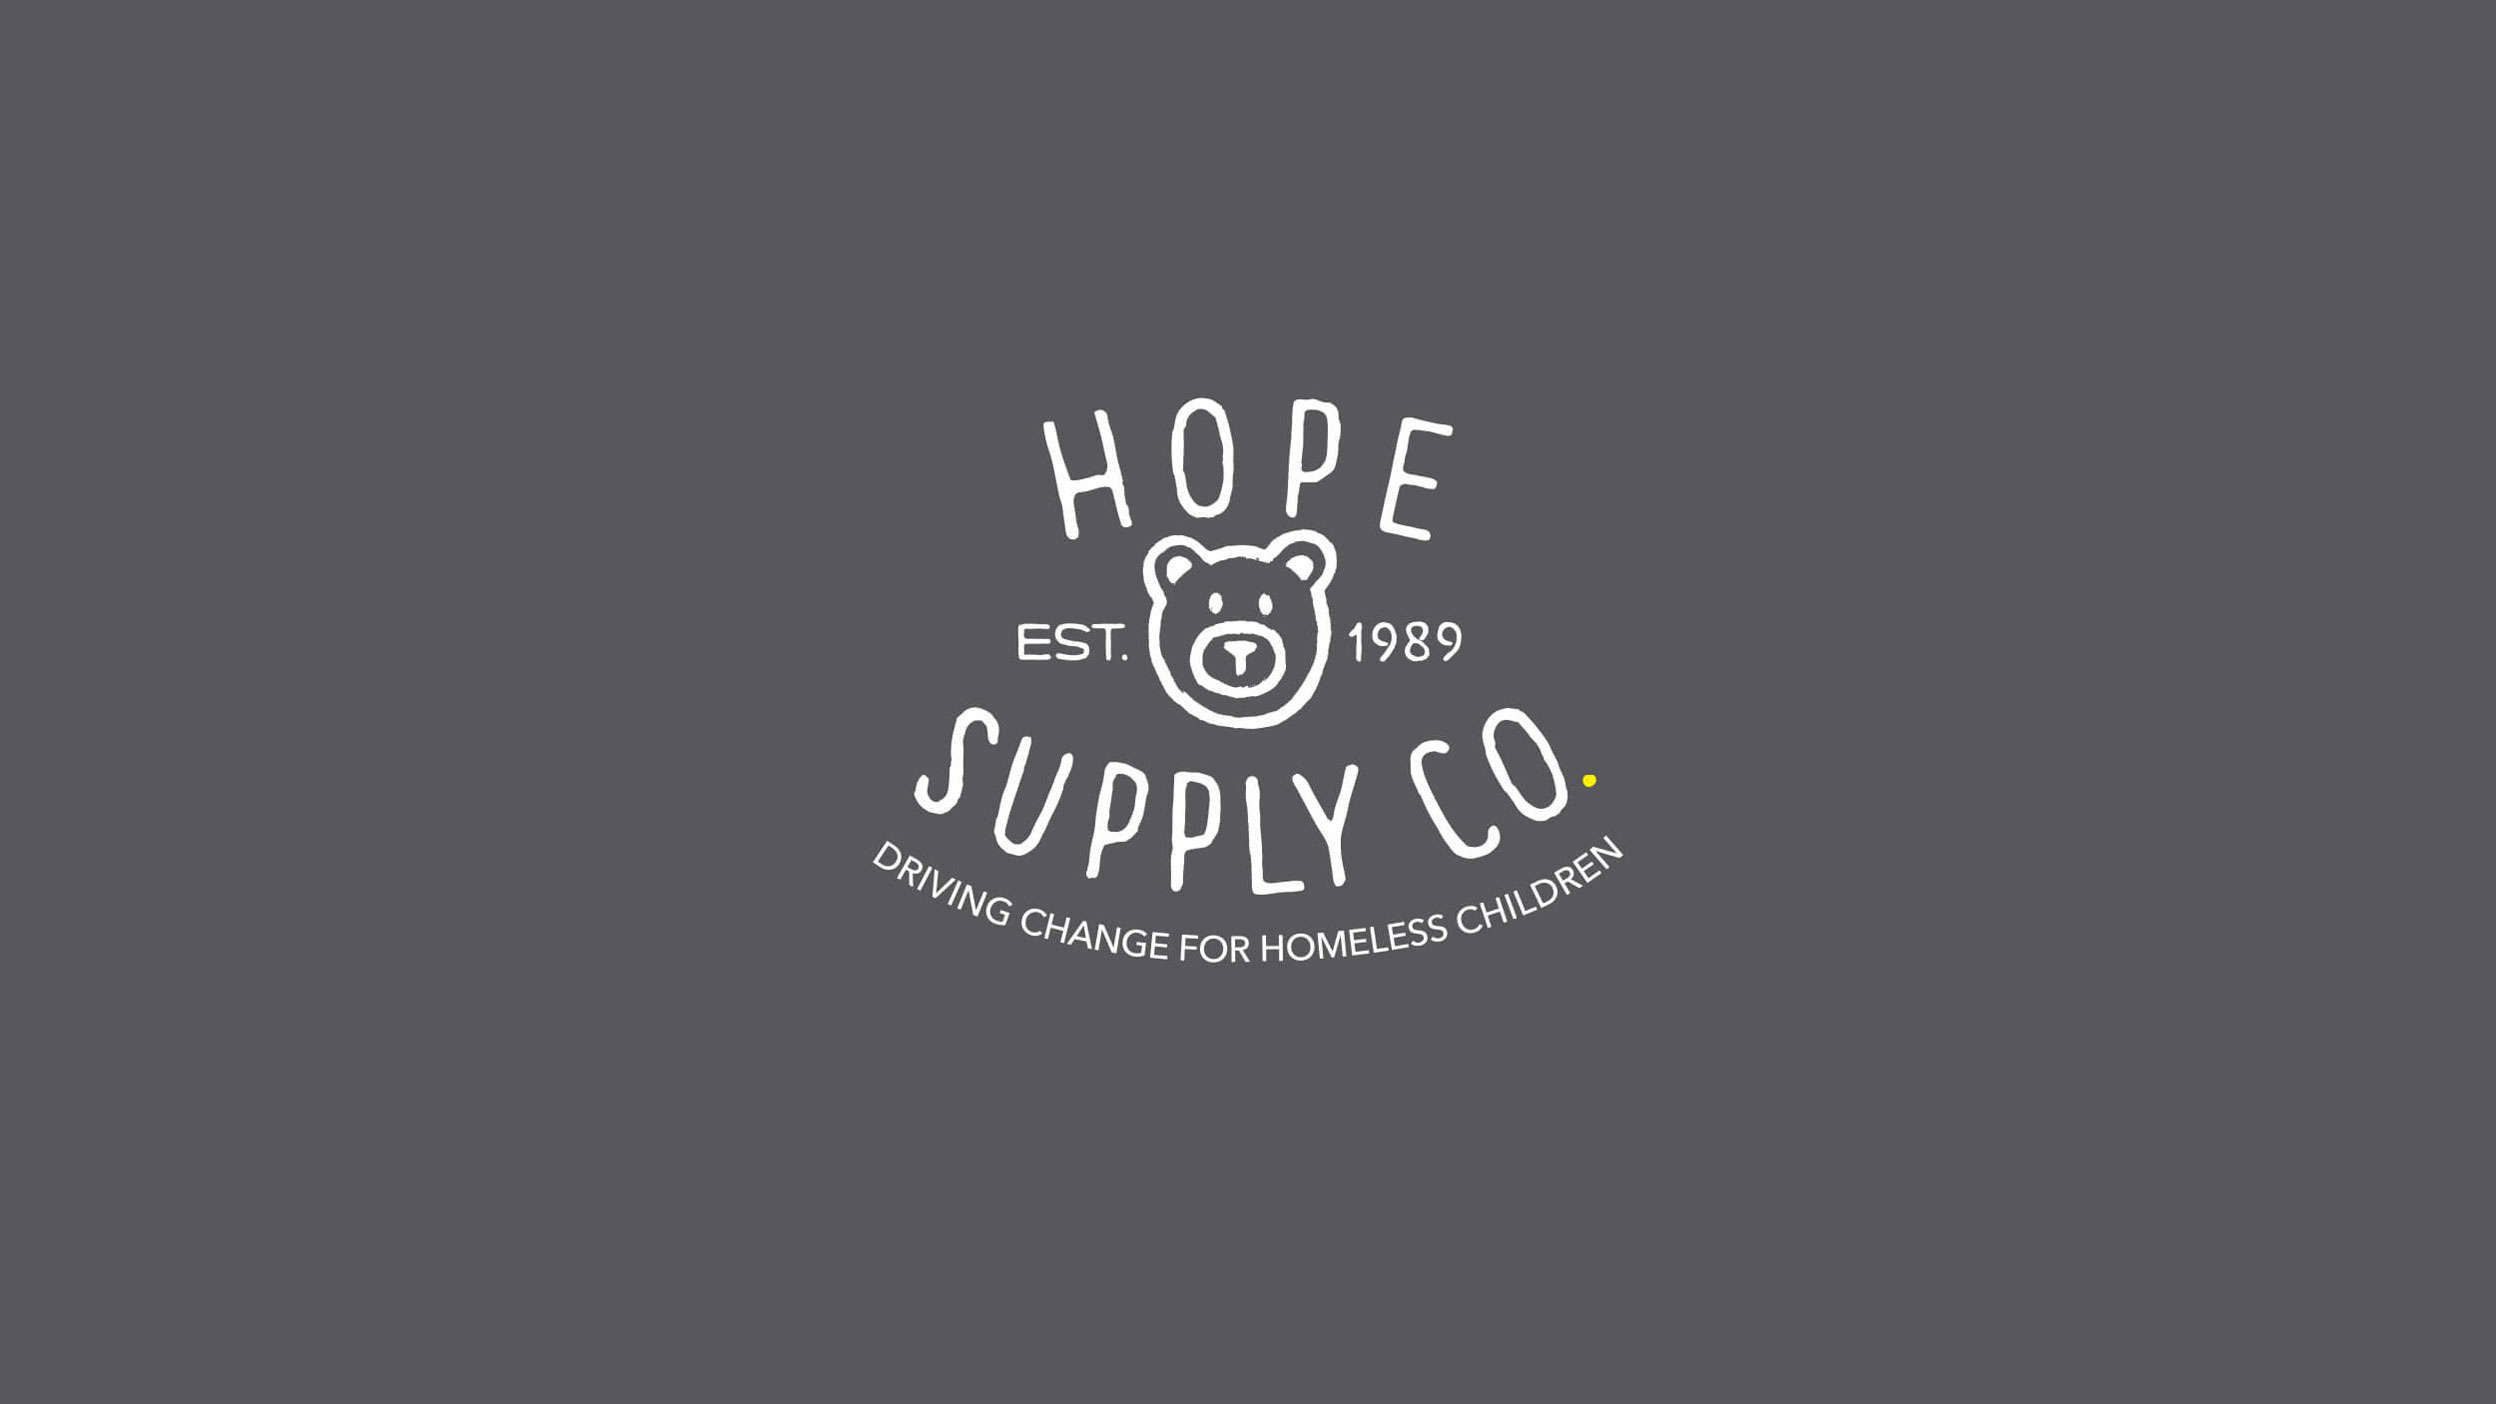 Hope Supply Co. | EST. 1989 | Driving Change for Homeless Children